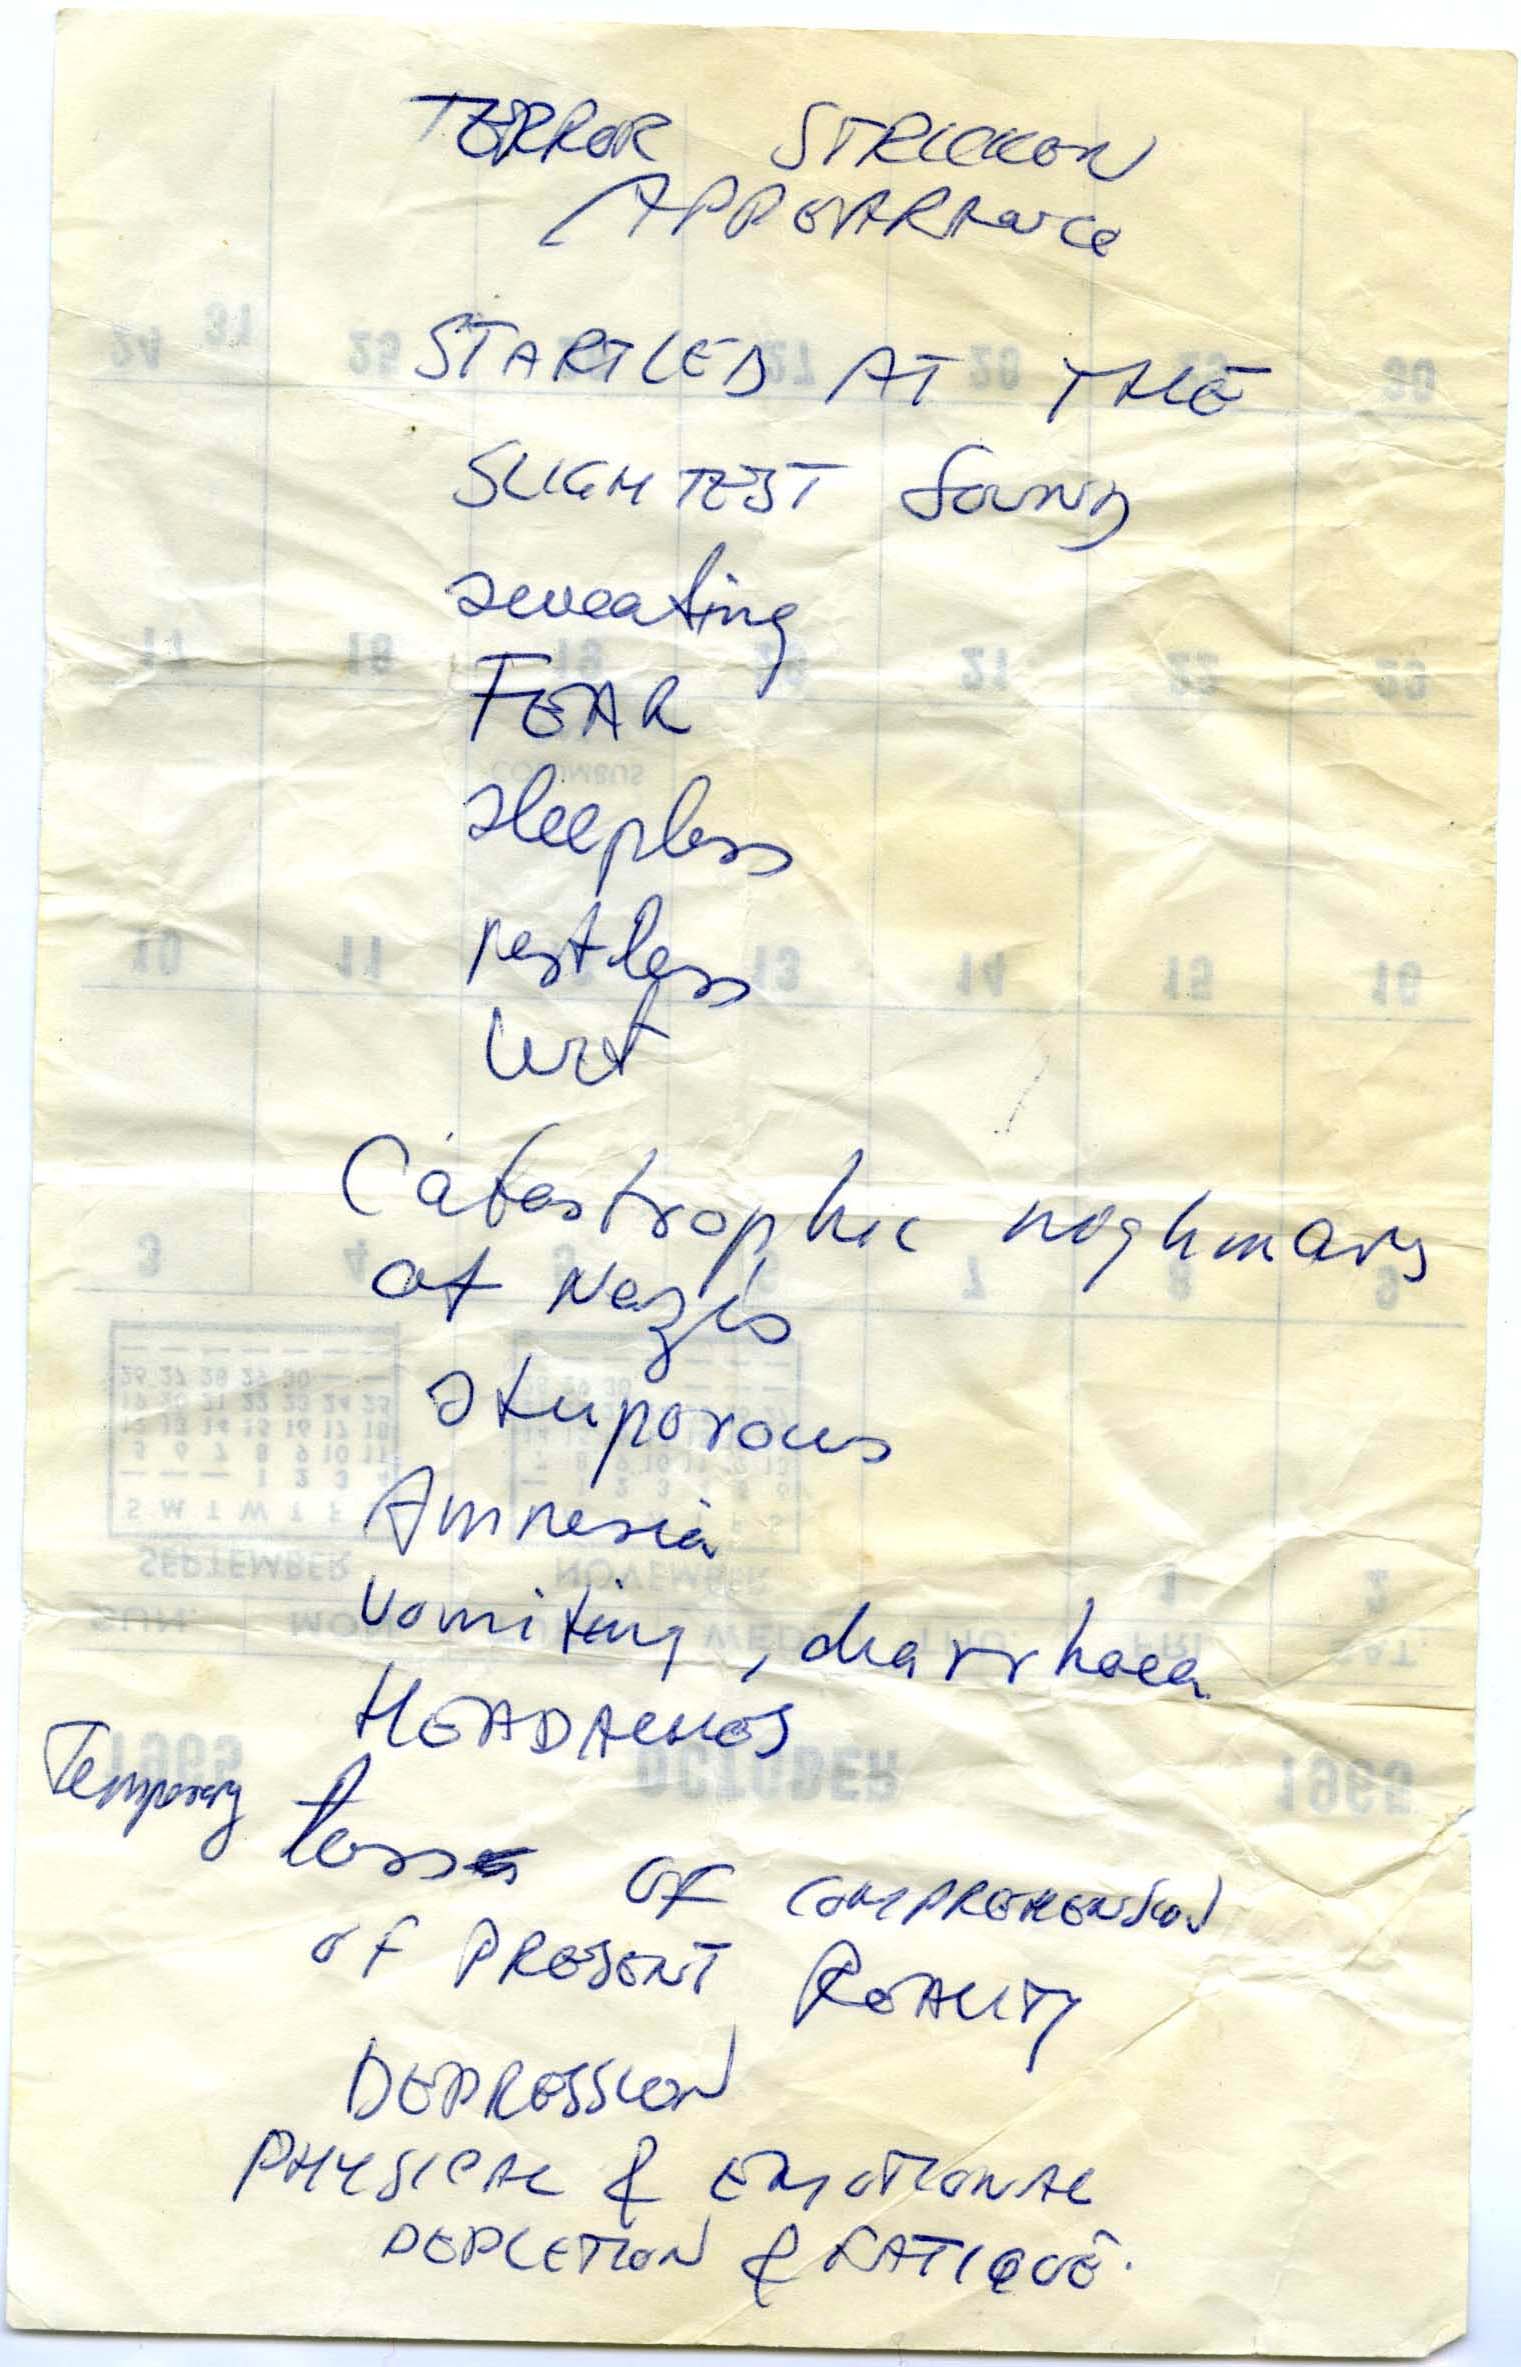 Ben's Handwritten List of Symptoms